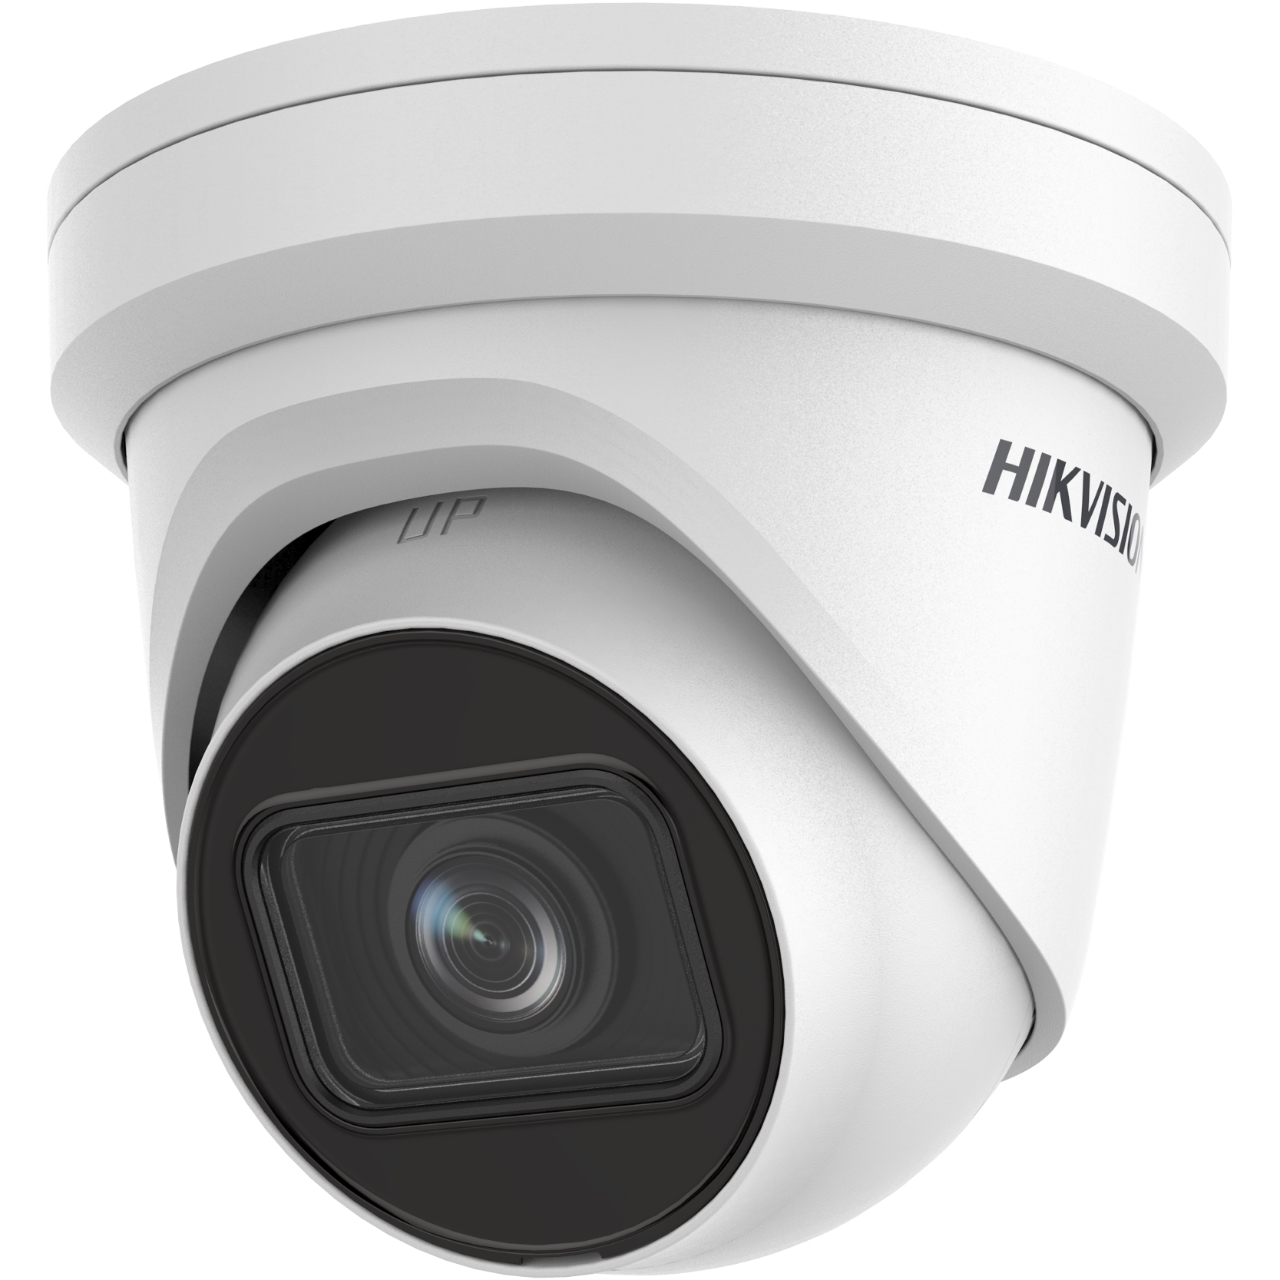 20000587 Hikvision AcuSense EasyIP 2.0+ Gen2 4MP EXIR Turret IP camera, 2.8-12mm